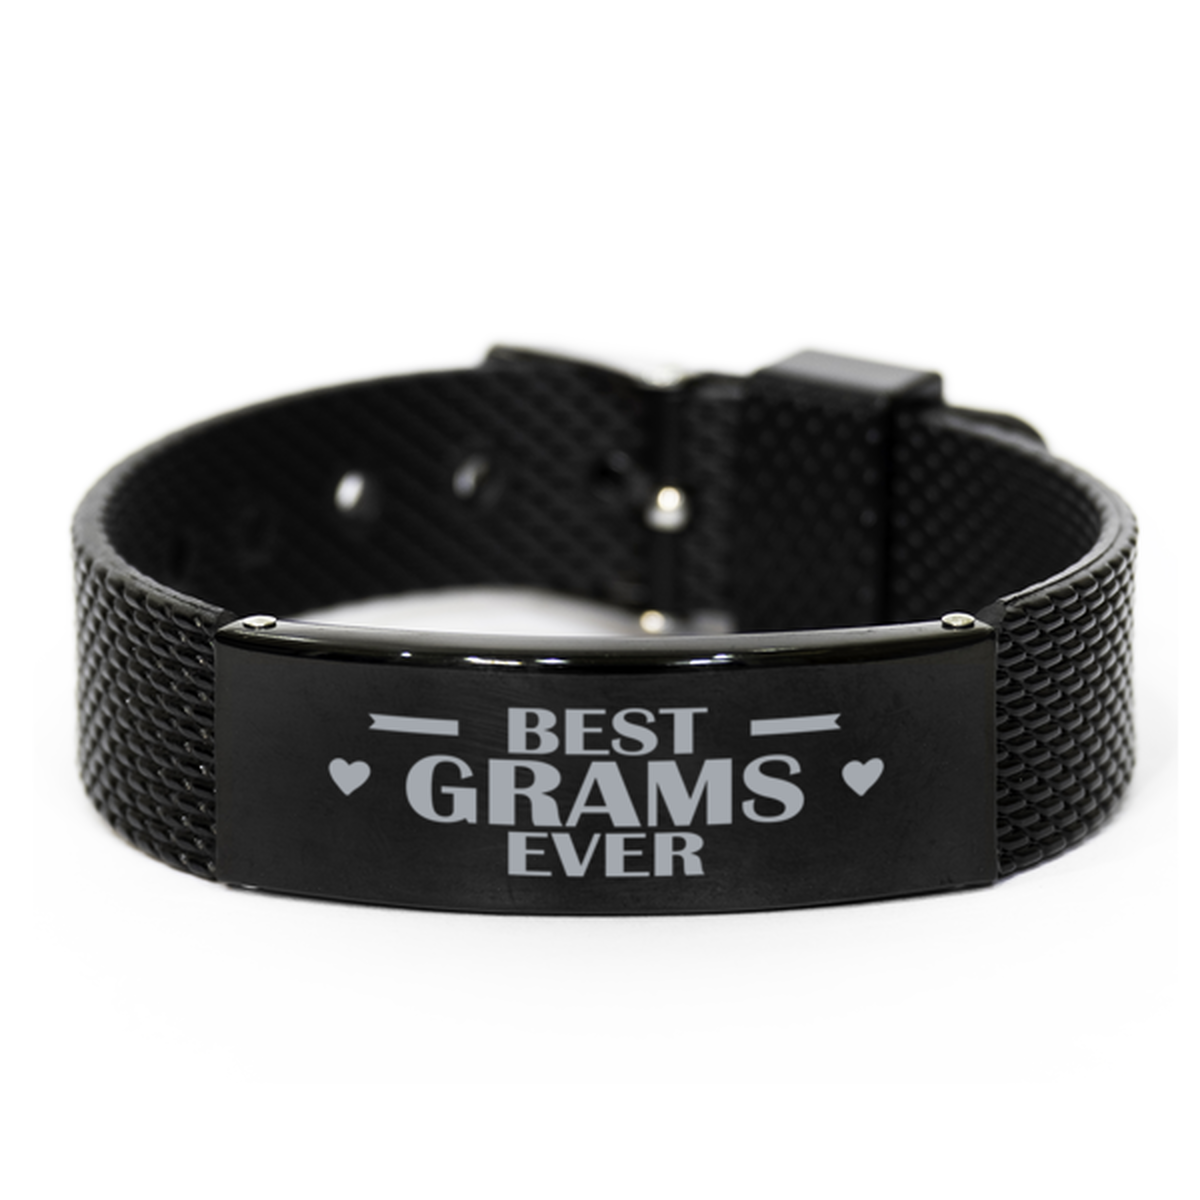 Best Grams Ever Grams Gifts, Gag Engraved Bracelet For Grams, Best Family Gifts For Women